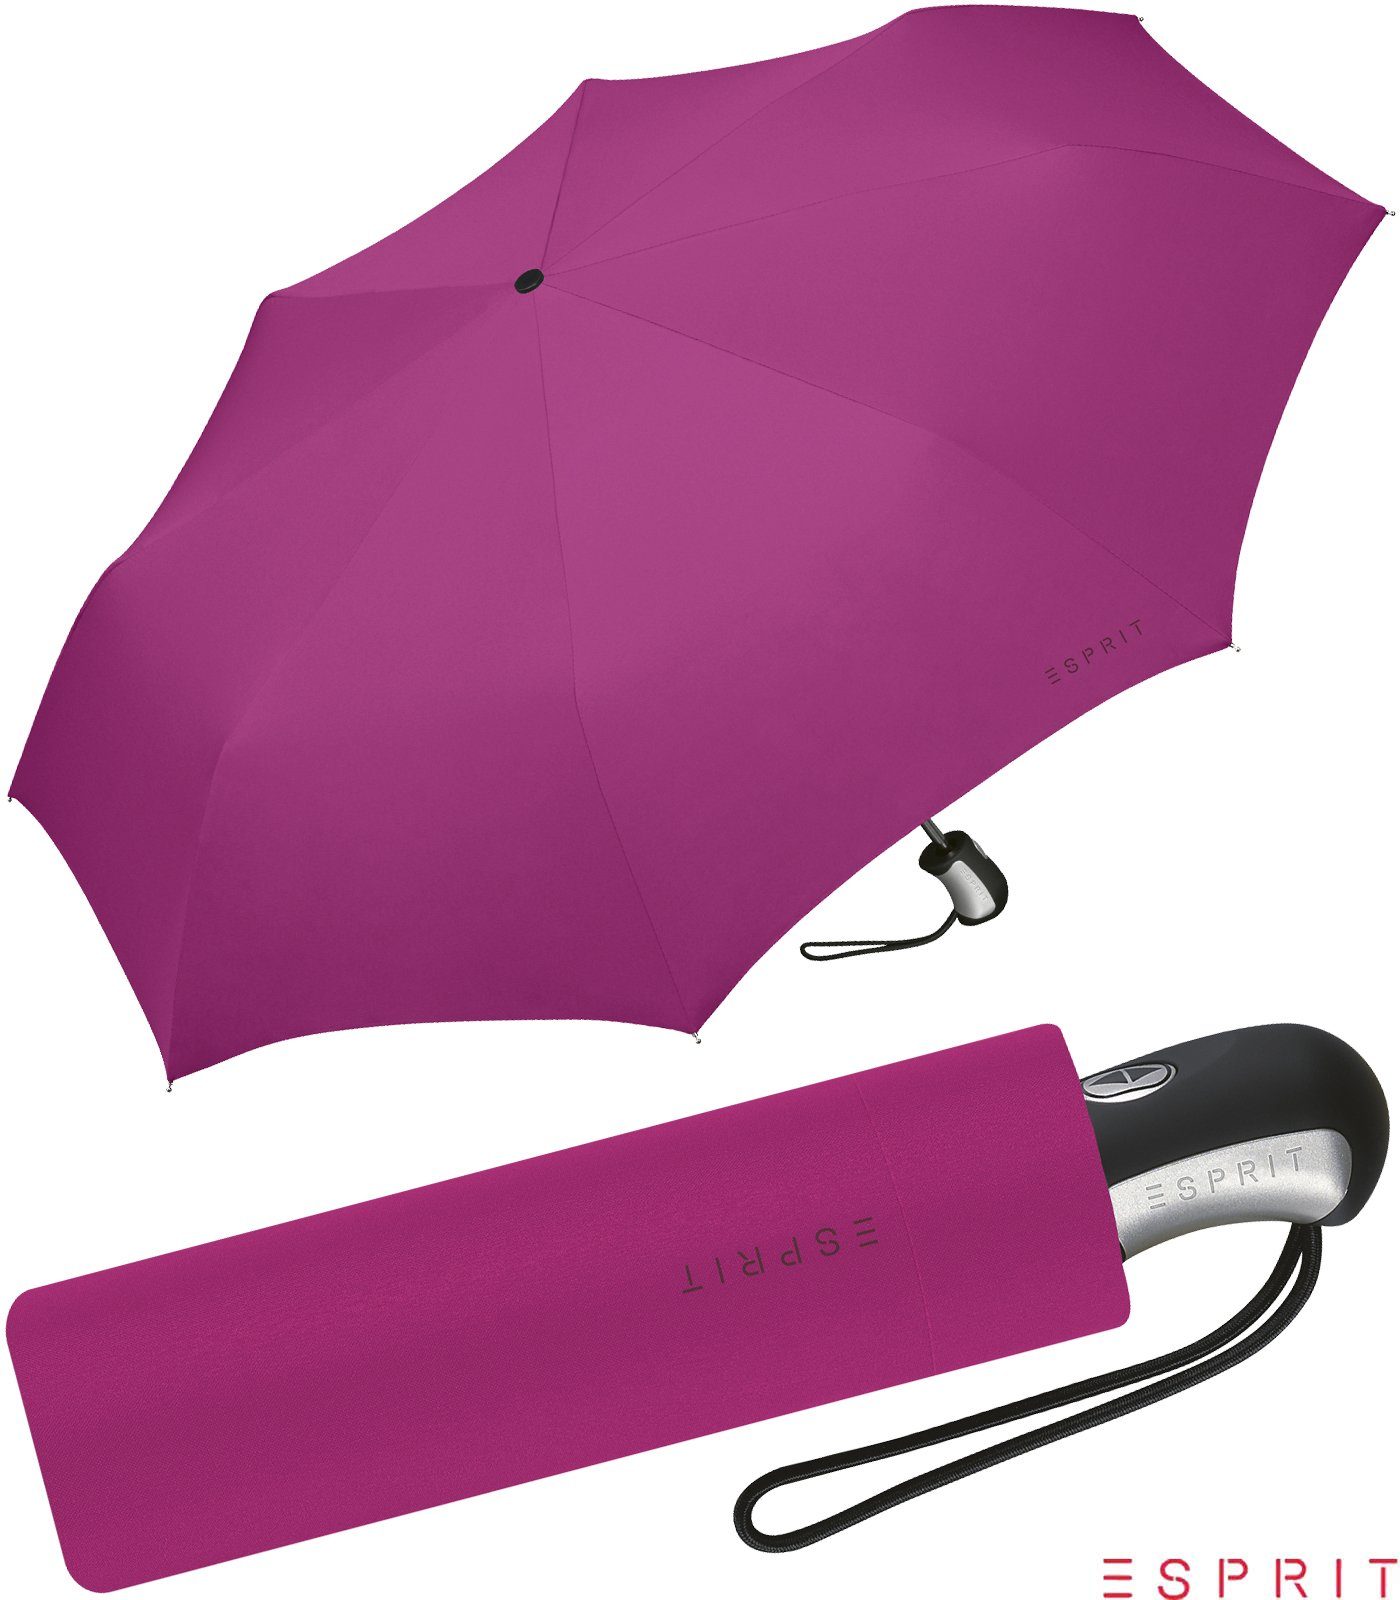 Esprit Taschenregenschirm schöner Schirm für Damen mit Auf-Zu Automatik, in  kräftigen Farben - festive fuchsia